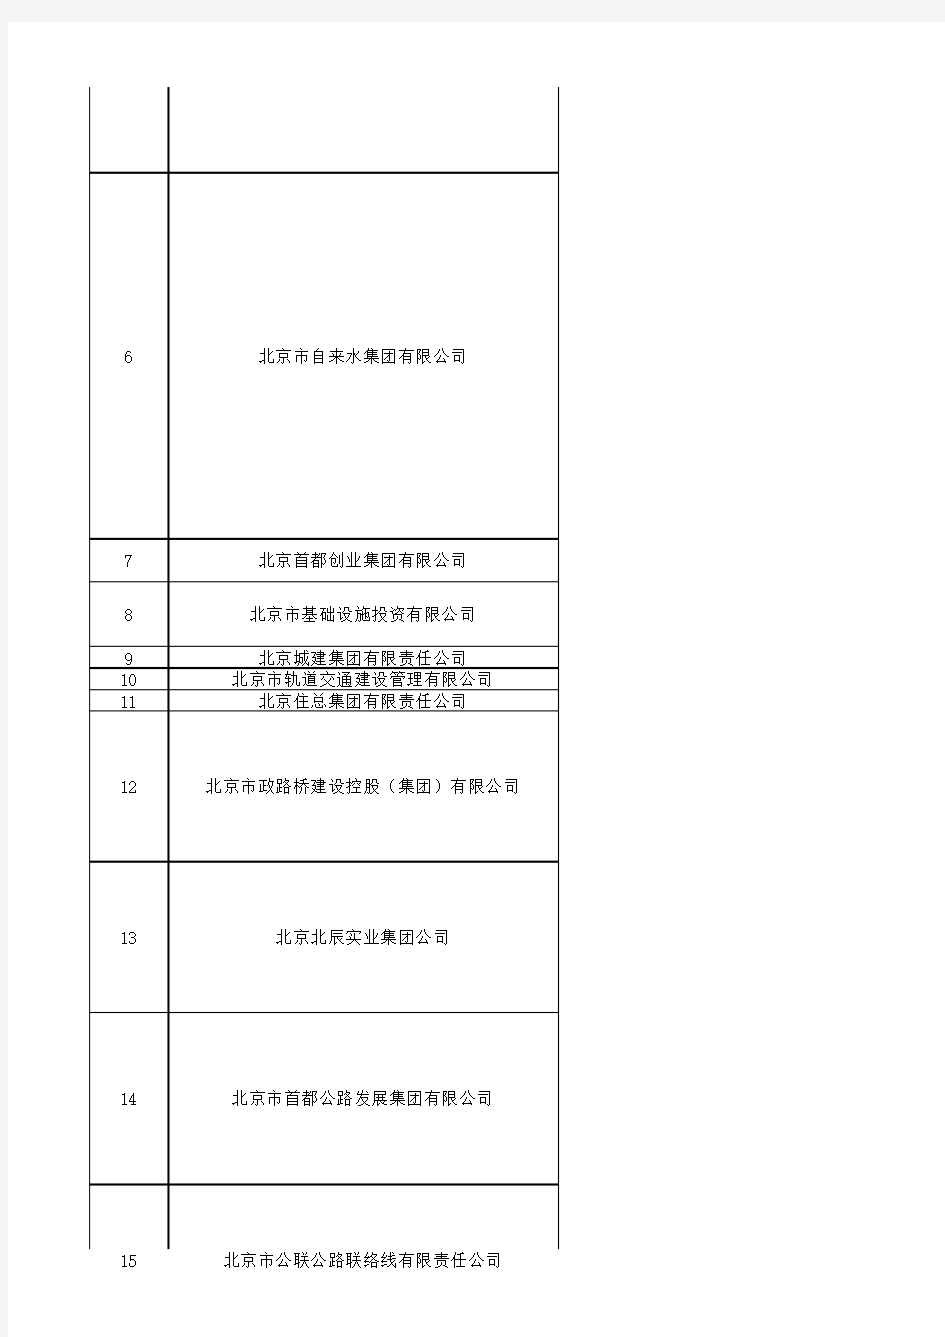 (完整版)北京市国企名单-国资委下属企业名单(142家)